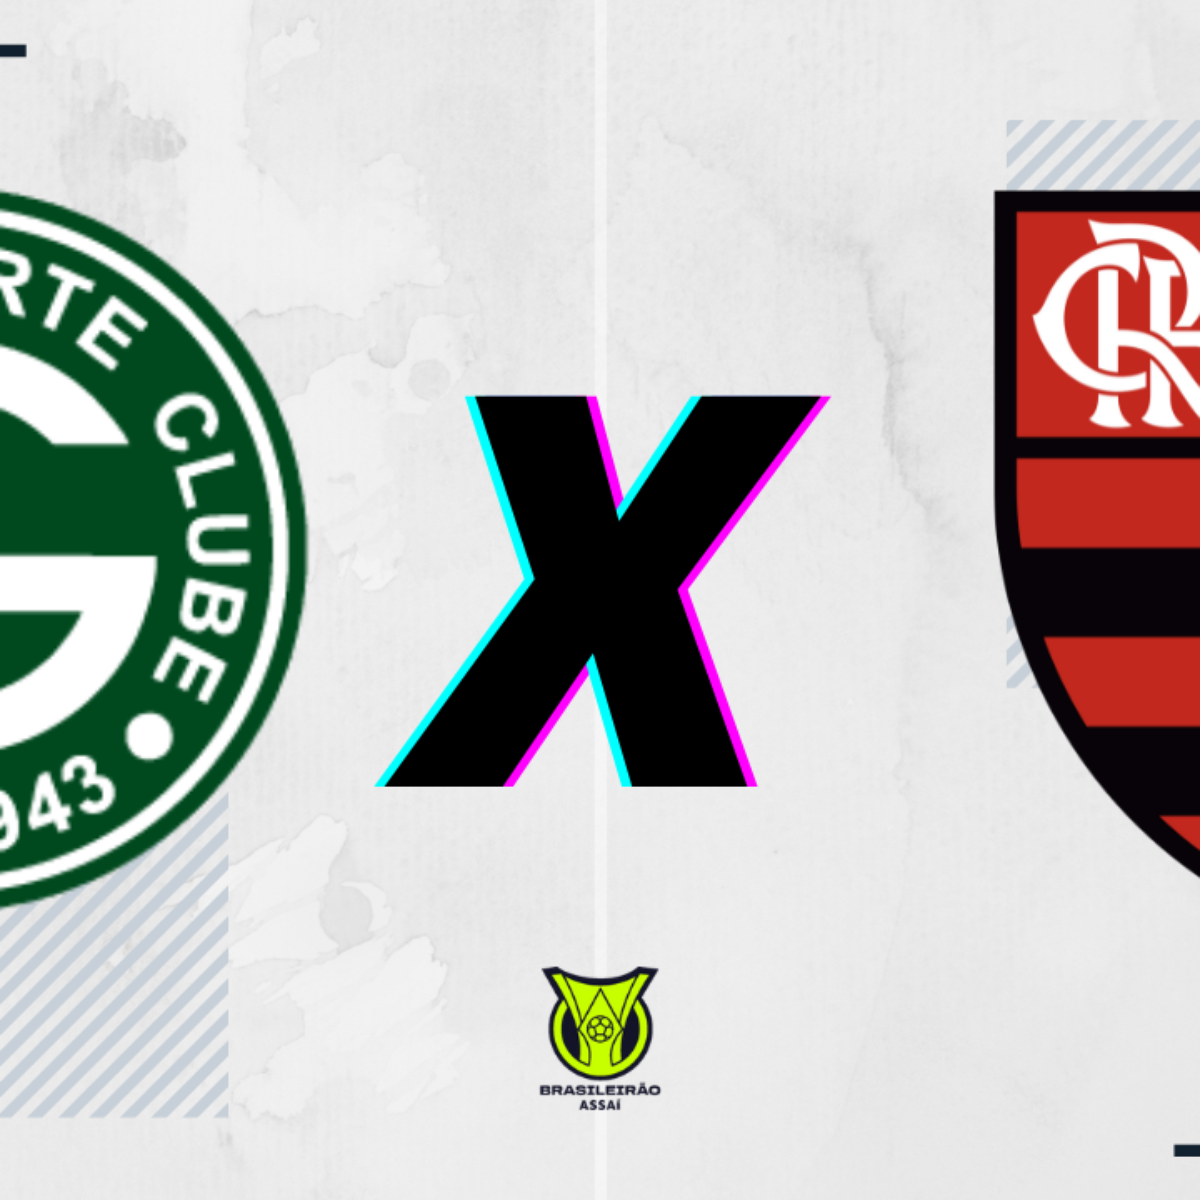 Jogo ao vivo, escalação e mais: saiba tudo sobre Goiás x Flamengo